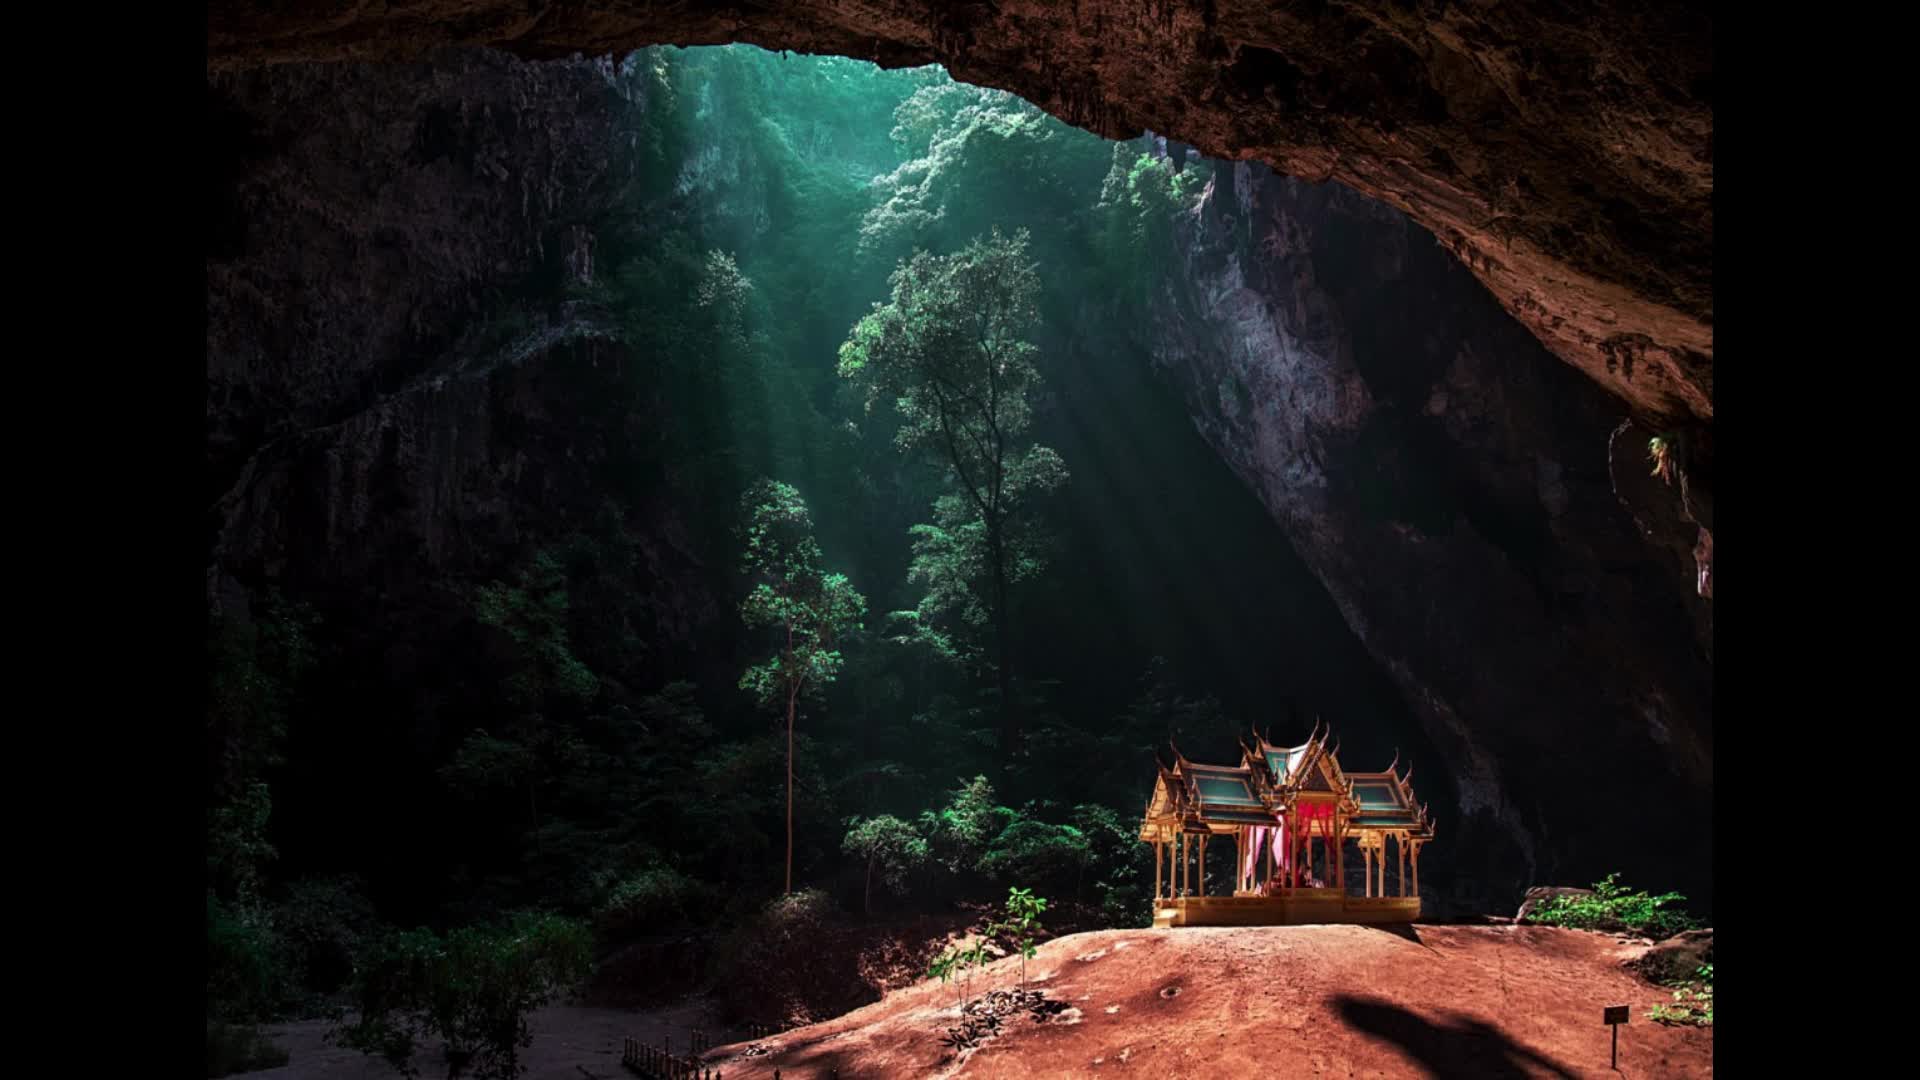 Cave v. Пещера Прайя Накхон (Phraya Nakhon Cave). Пещера Прайя Тайланд. Прая након (Phraya Nakhon), Таиланд. Таиланд. Пещера Phraya Nakorn.